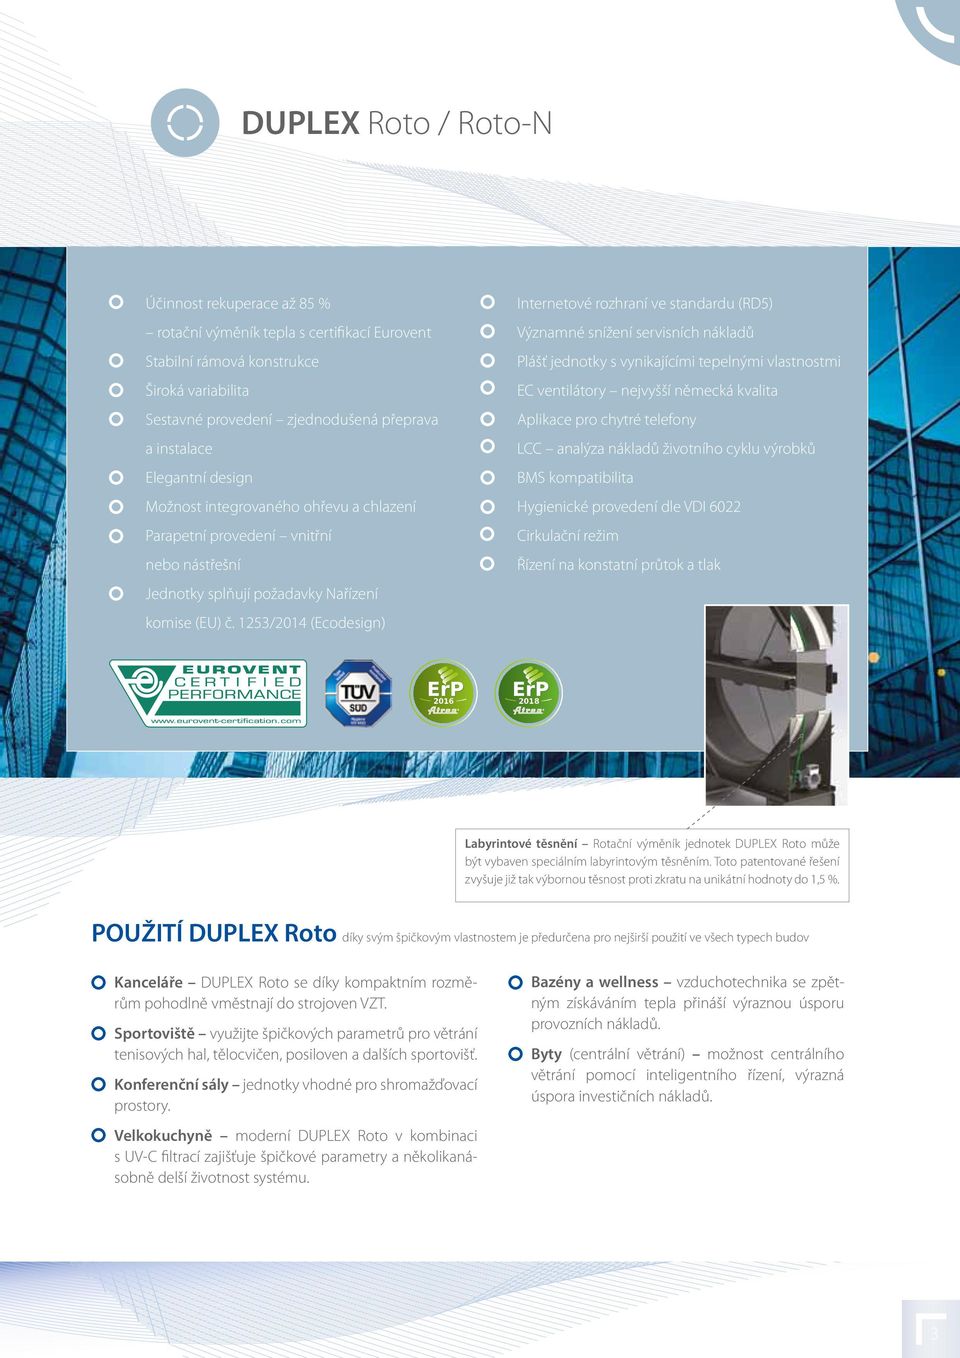 1253/2014 (Ecodesign) Internetové rozhraní ve standardu (RD5) Významné snížení servisních nákladů Plášť jednotky s vynikajícími tepelnými vlastnostmi EC ventilátory nejvyšší německá kvalita Aplikace